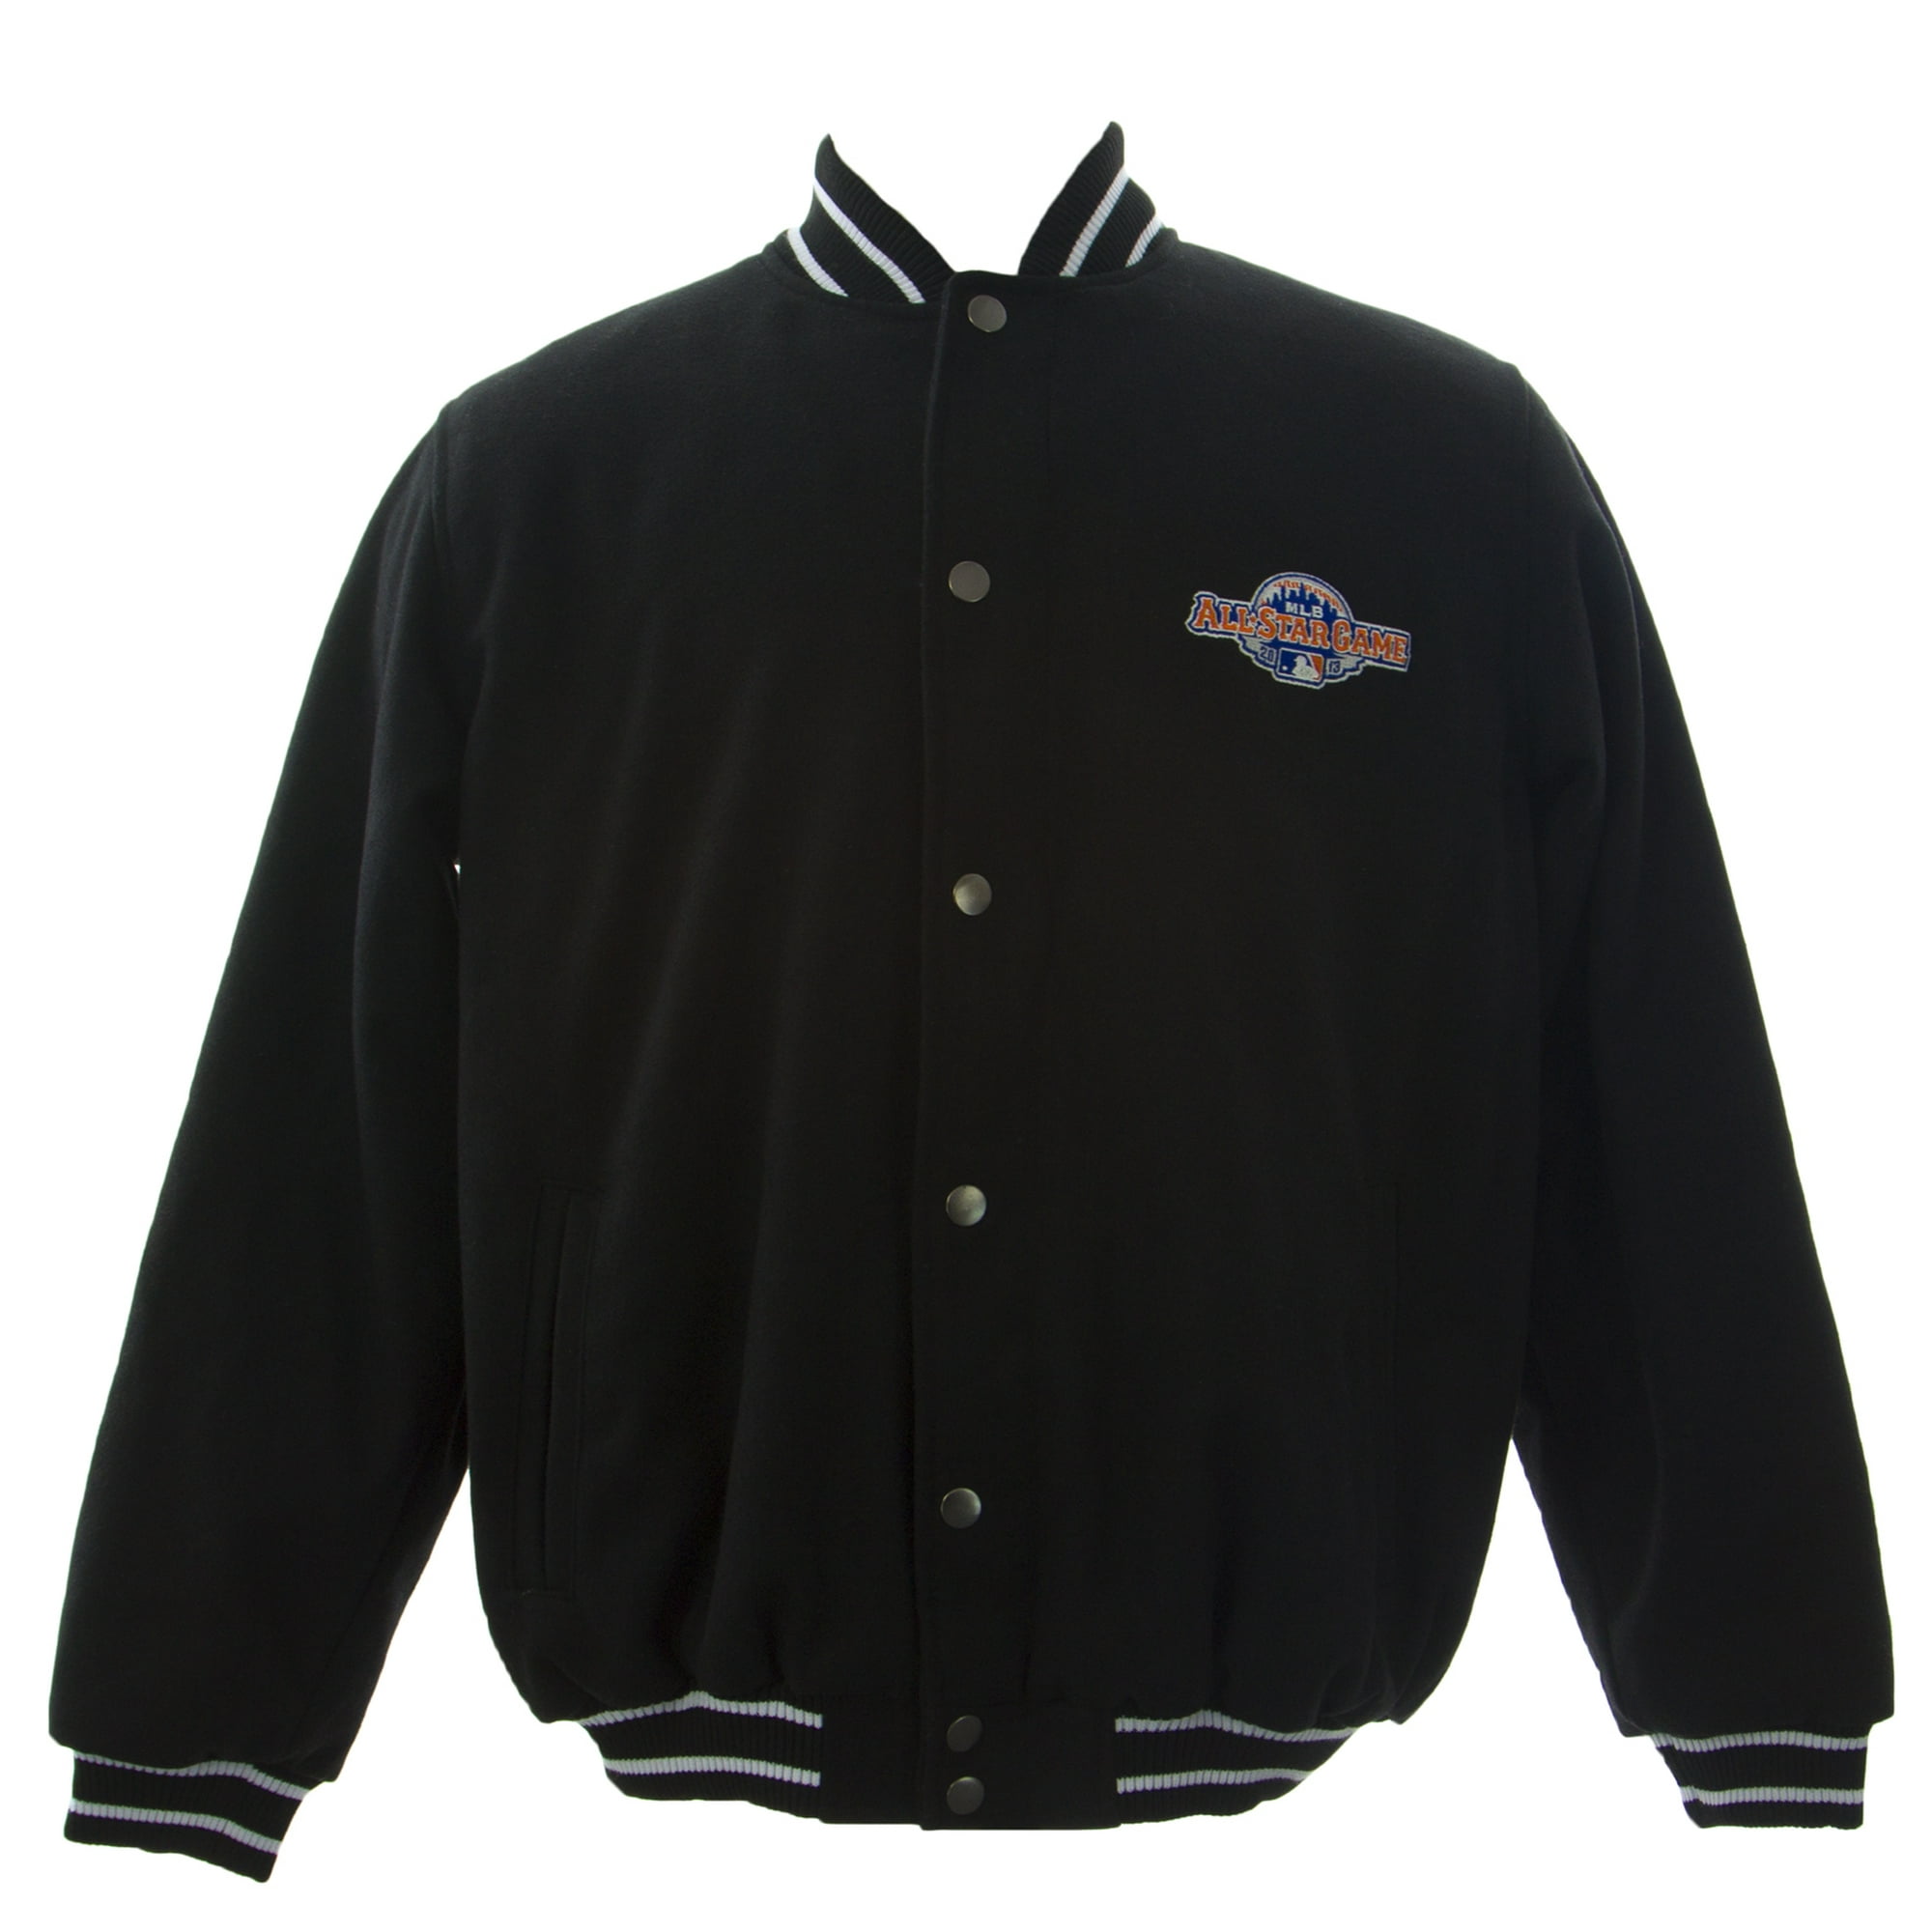 GIII Men's 2013 MLB All Star Game Varsity Jacket Sz Medium Black